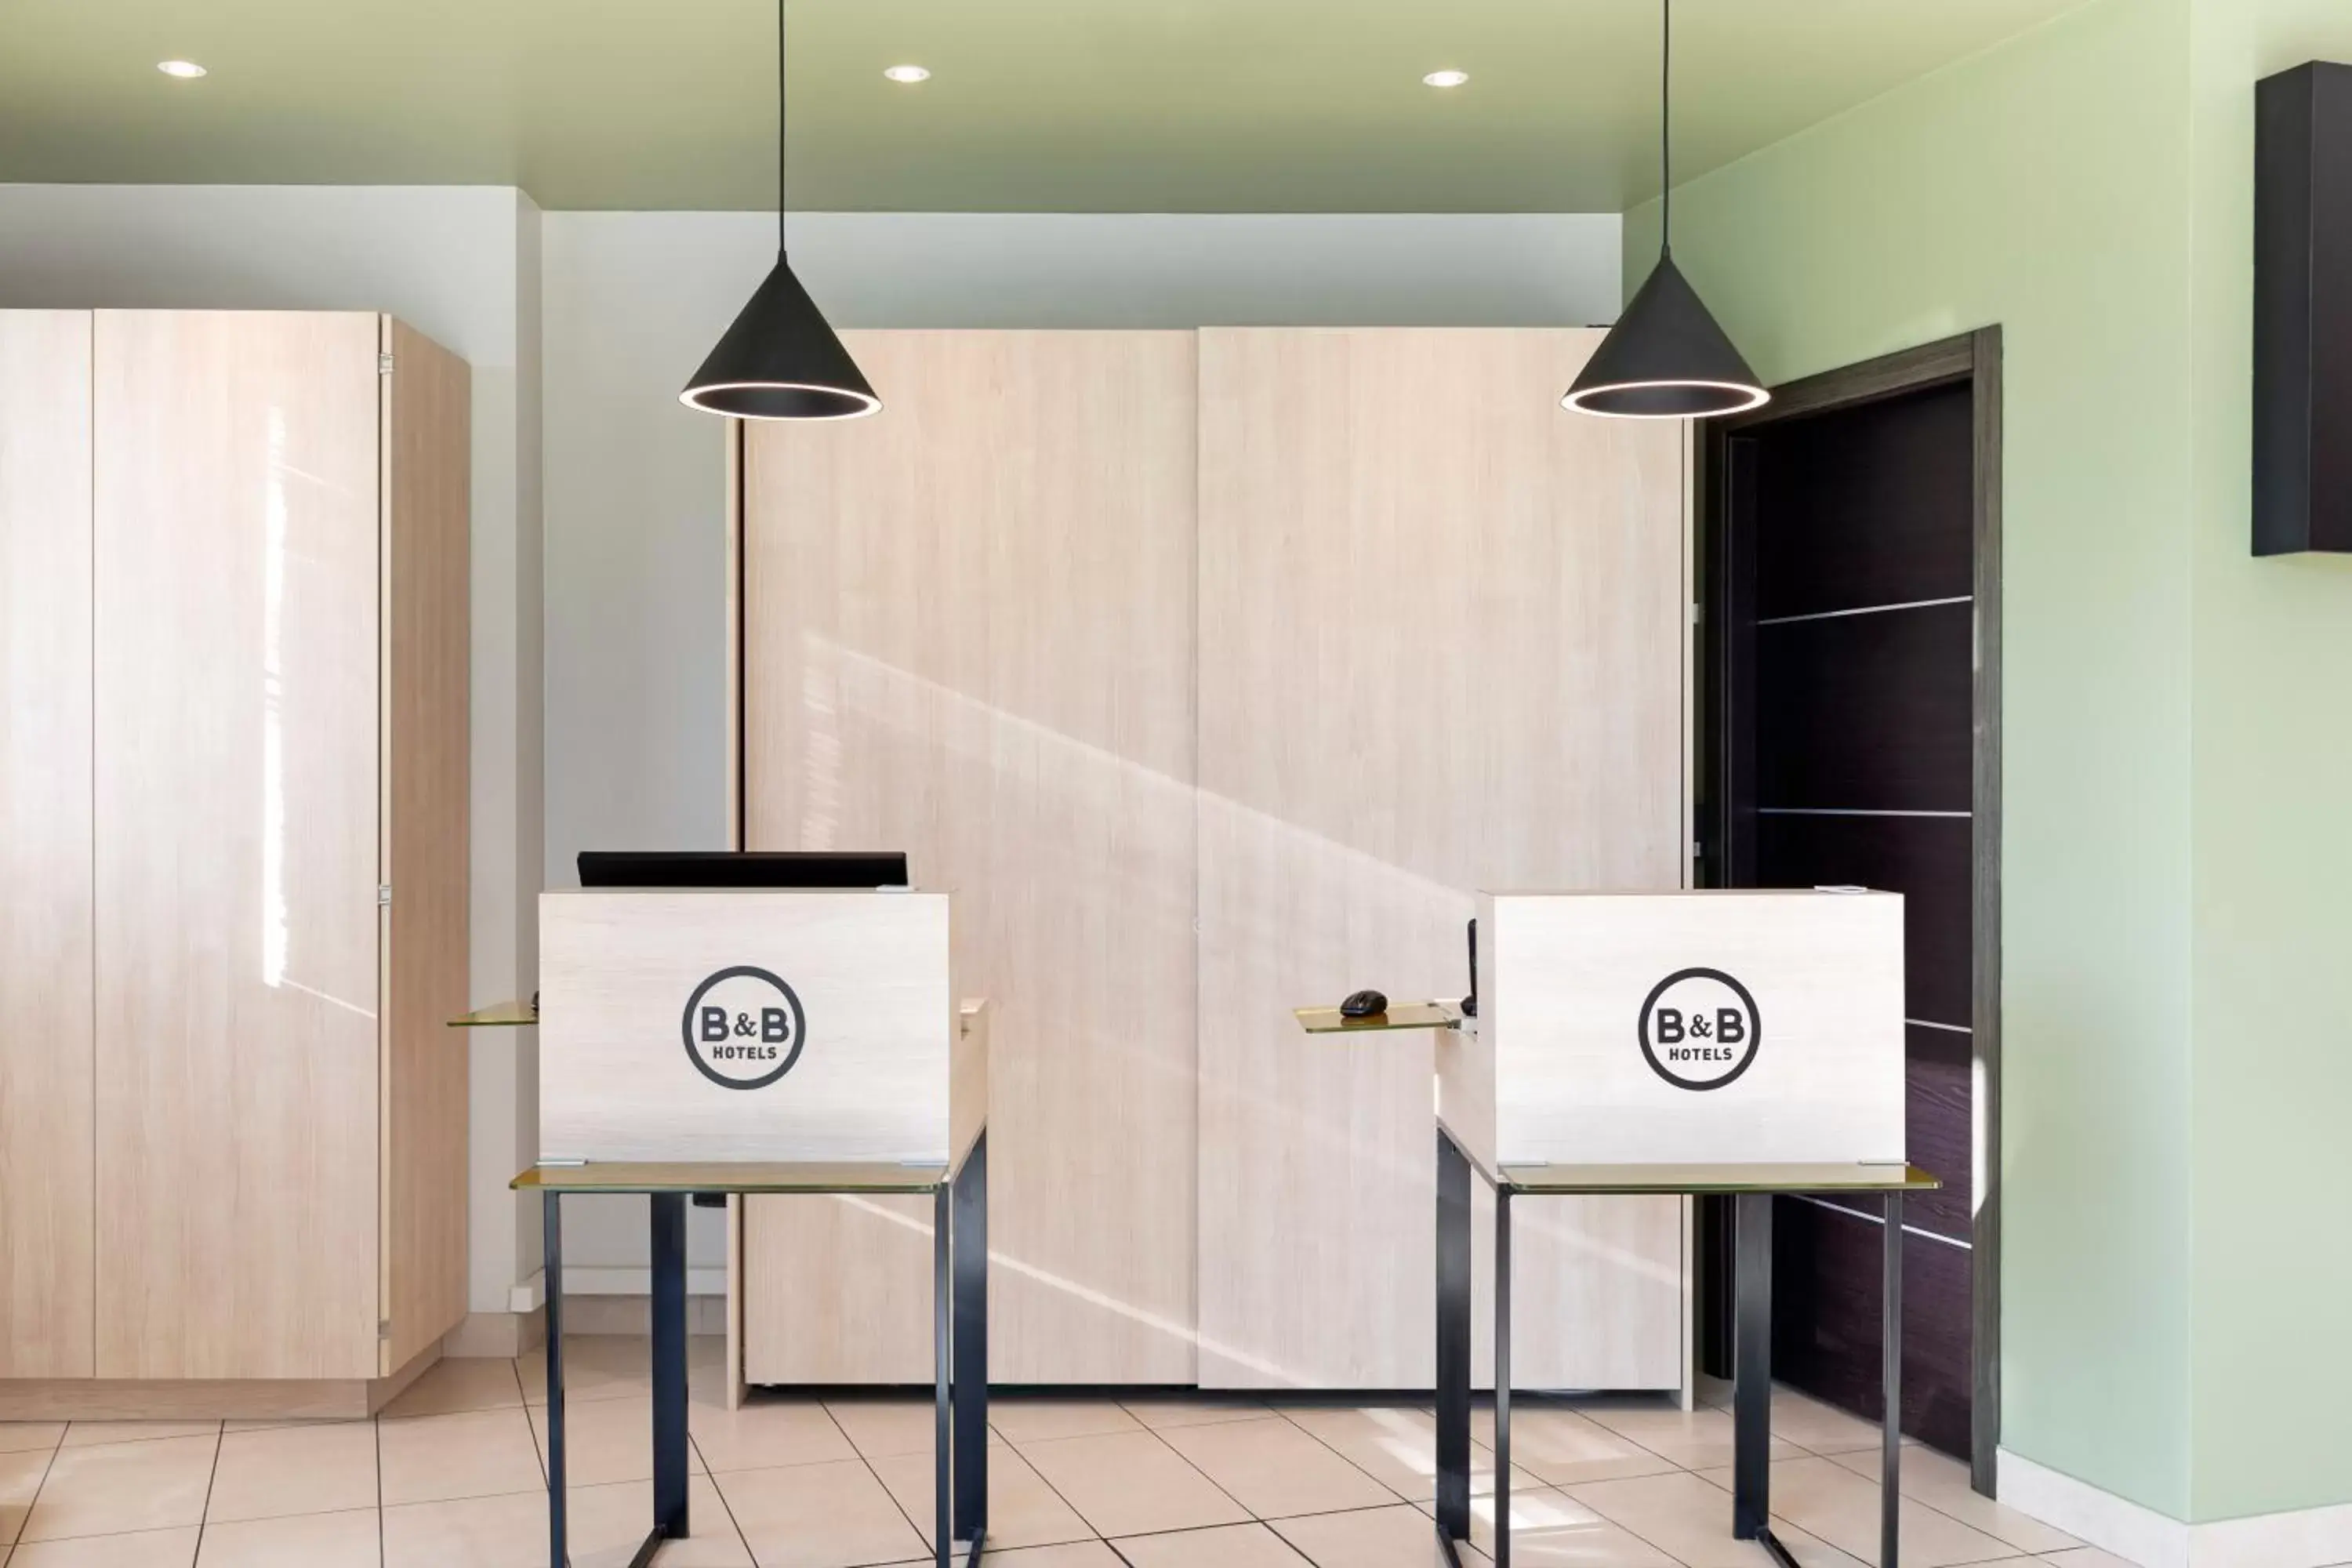 Lobby or reception, Bathroom in B&B Hotel Torino